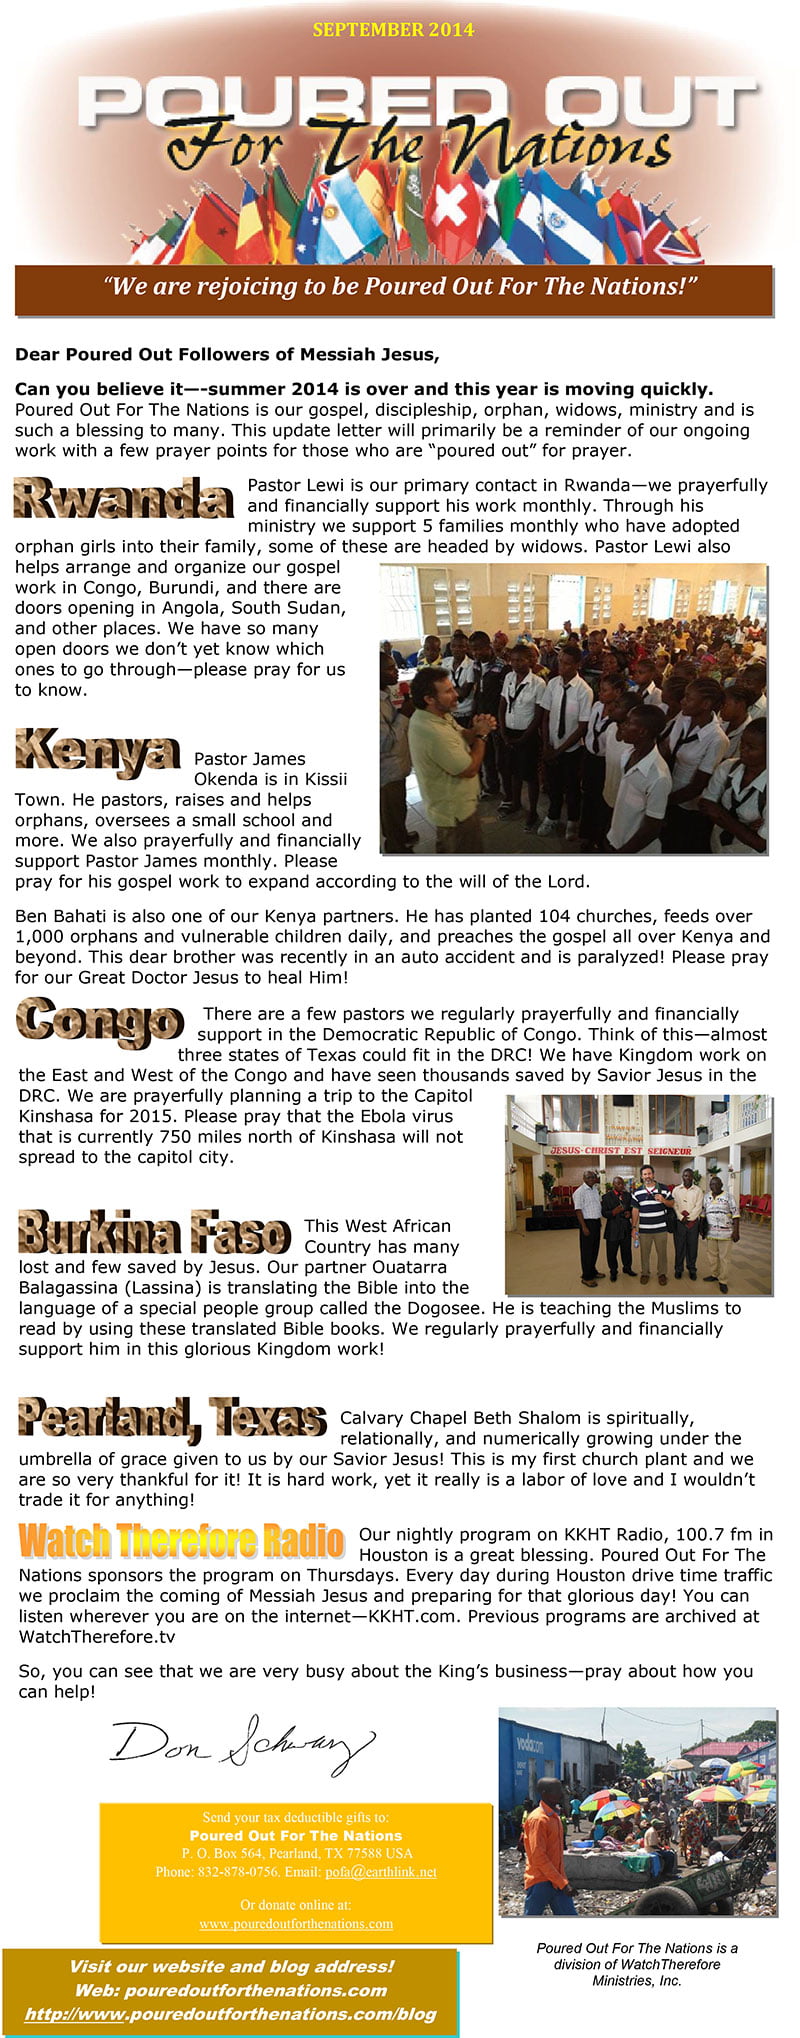 POFN-September-2014-newsletter